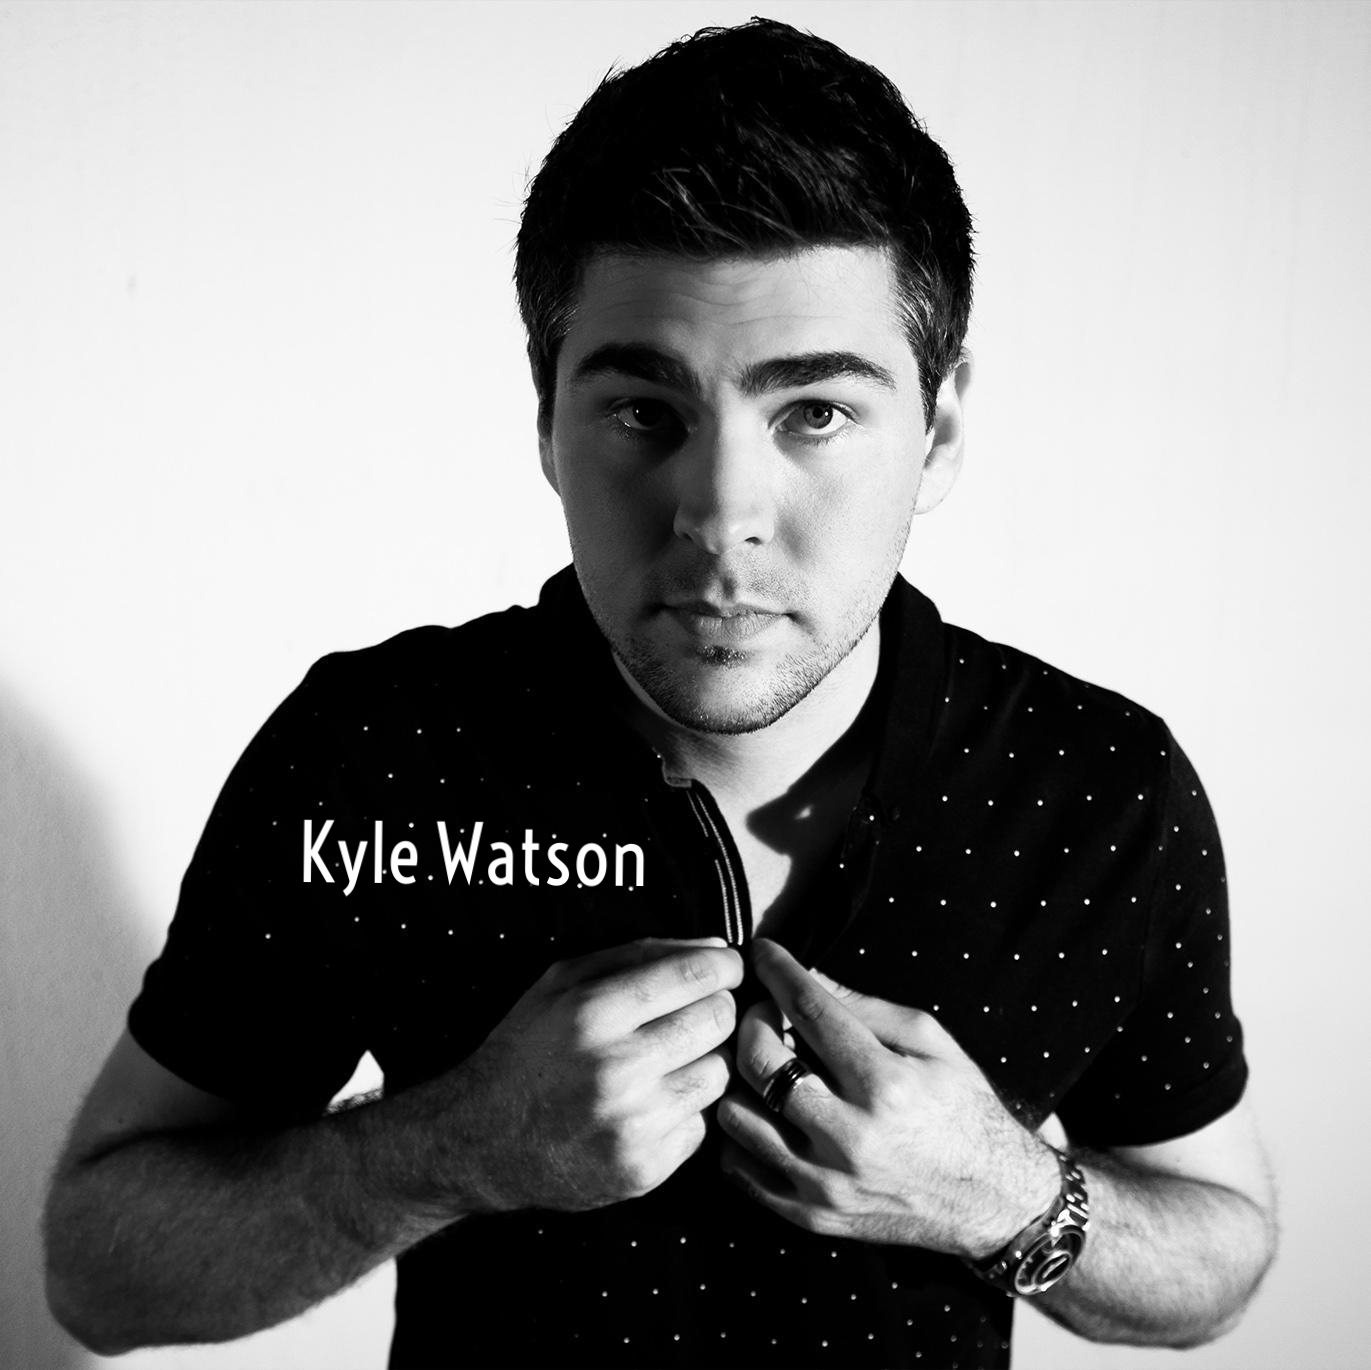 Kyle Watson